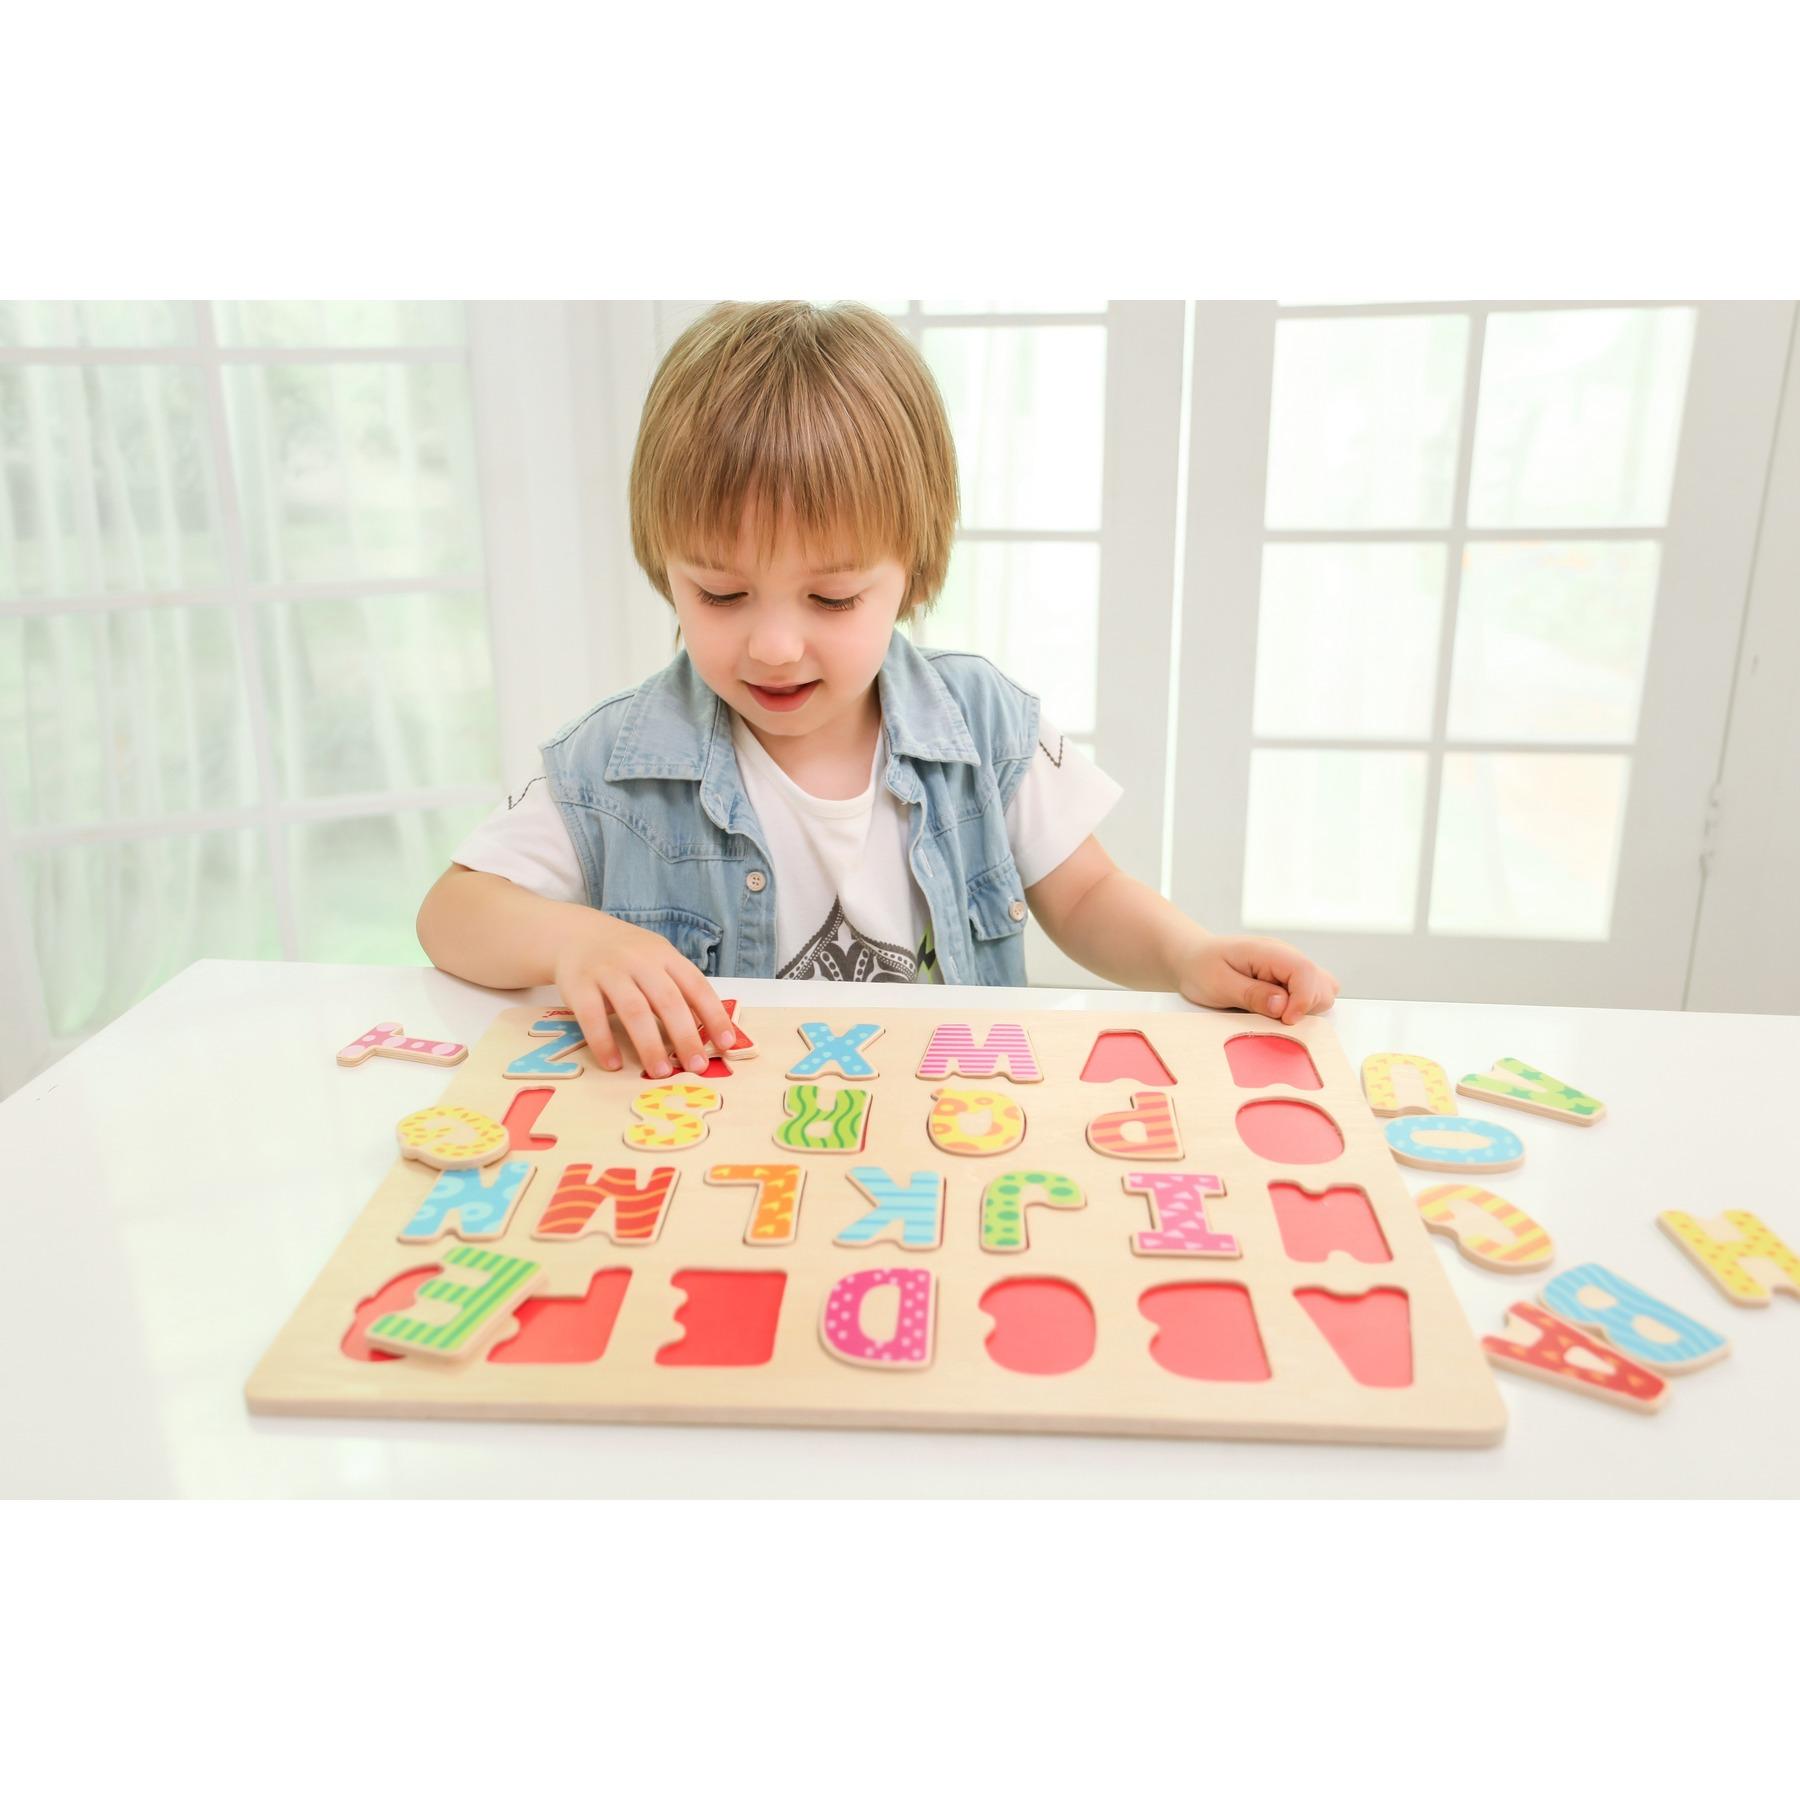 Изображение товара: Iwood-головоломка из деревянных букв (обучающая игра для малышей и детей Монтессори 3D головоломка буквы, головоломки цвета)